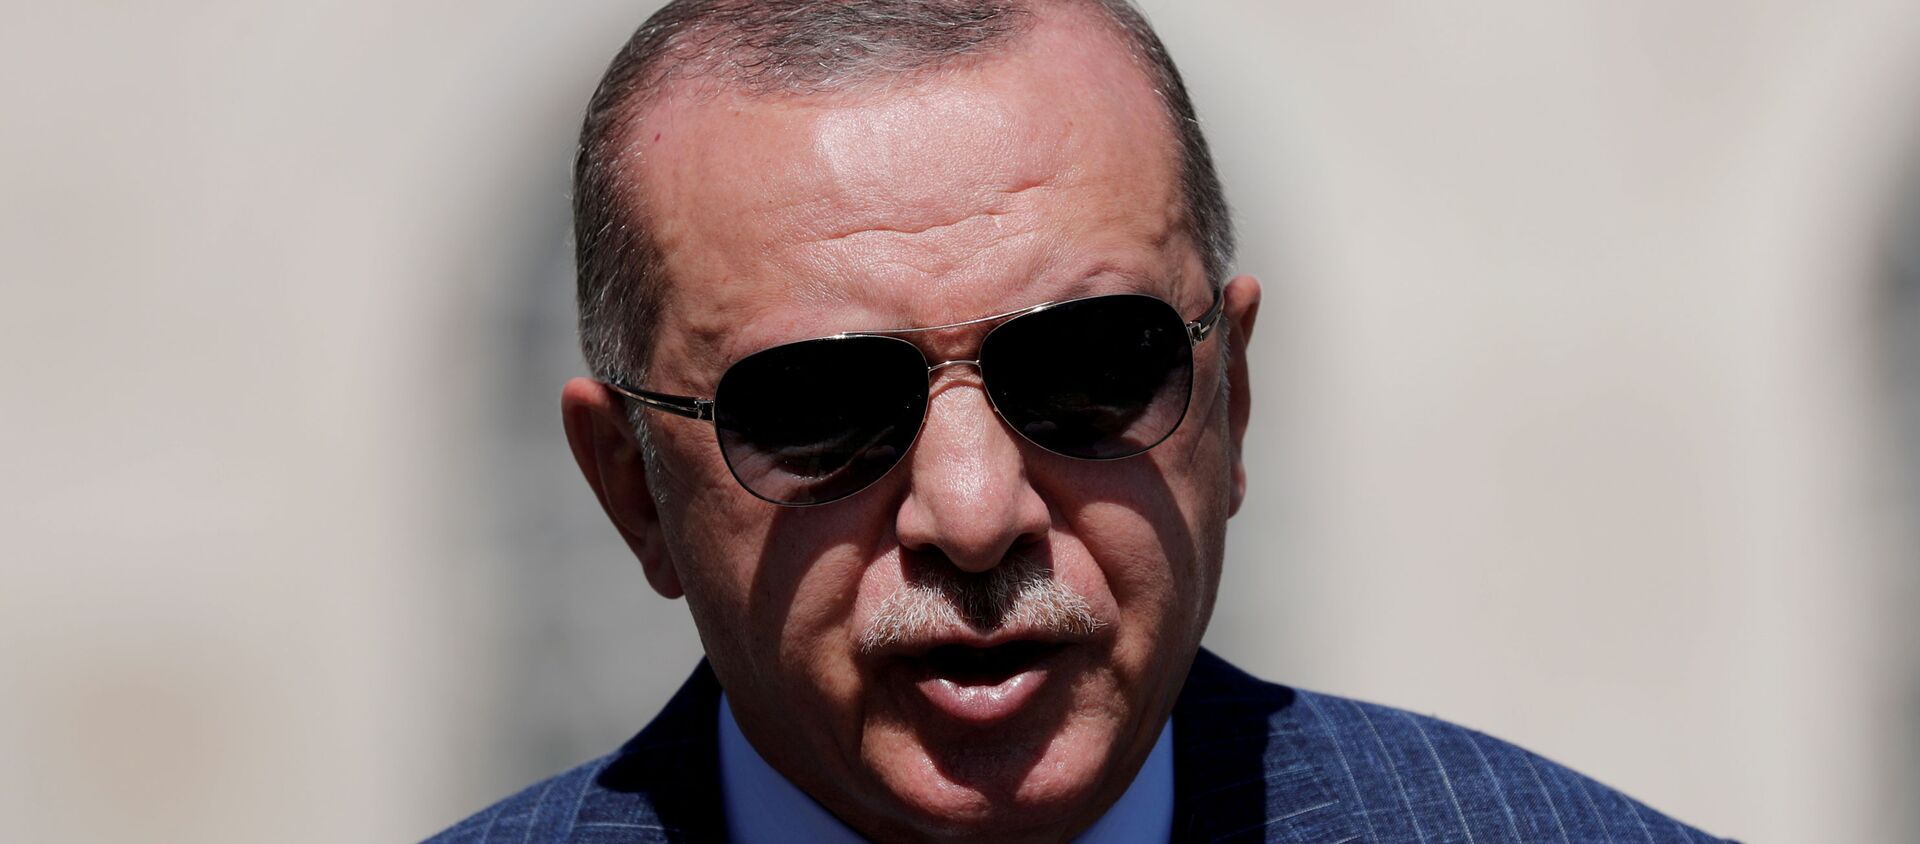 Recep Tayyip Erdogan, presidente de Turquía  - Sputnik Mundo, 1920, 19.10.2020